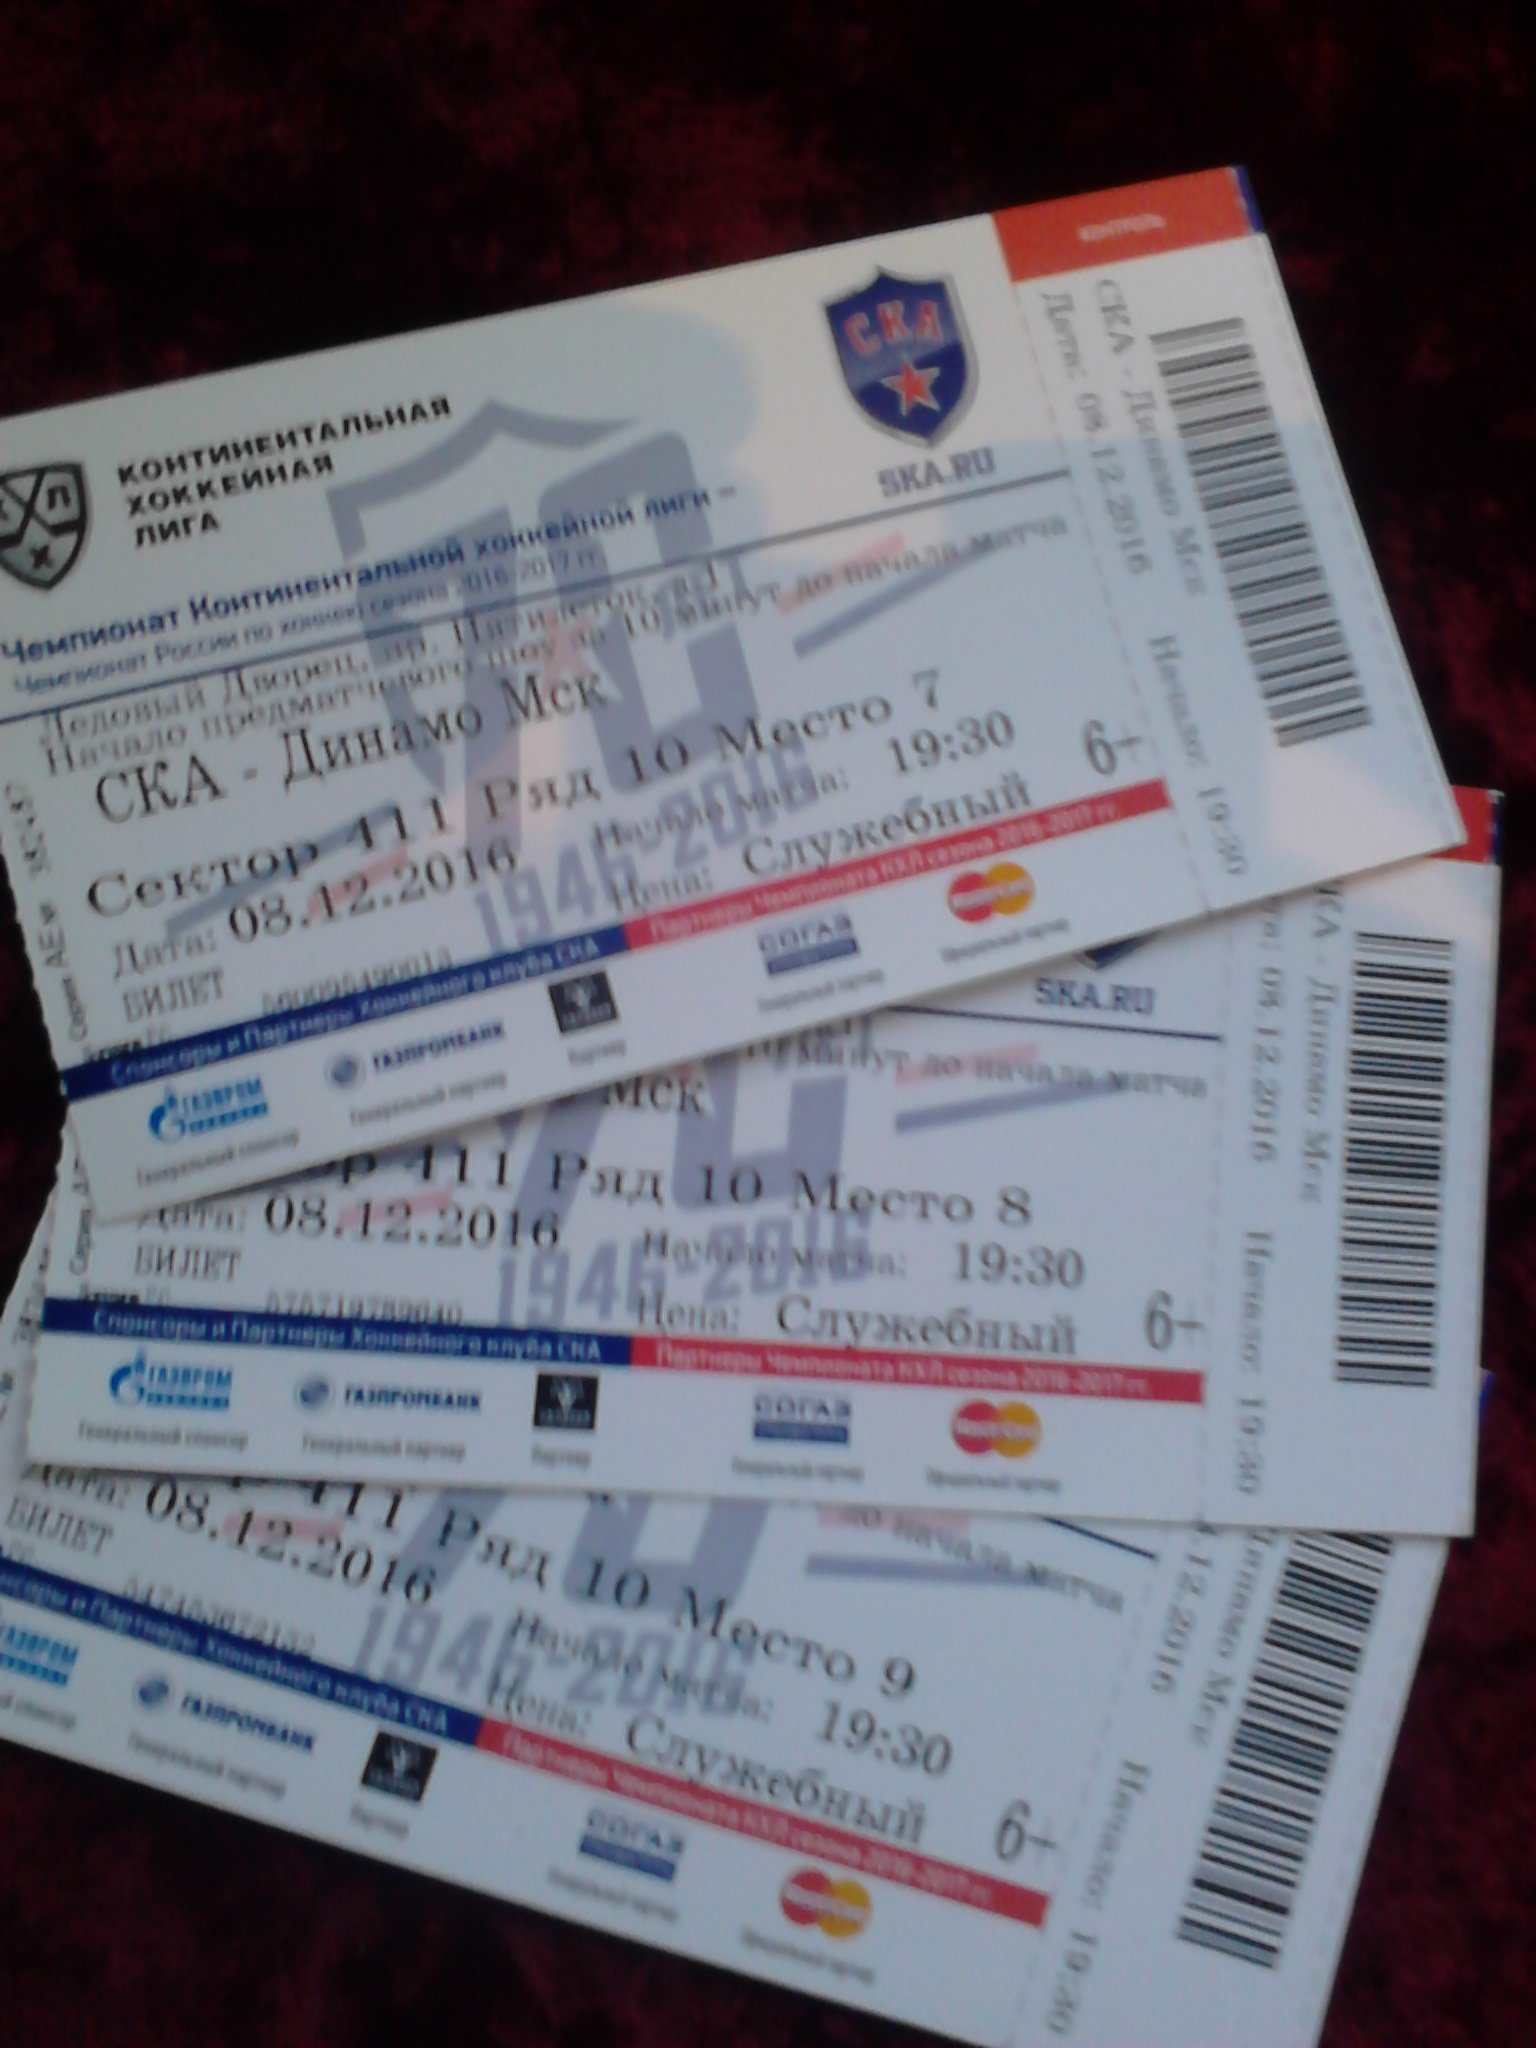 Ска кхл купить билет. Билет на матч СКА. Билет на хоккейный матч. Билет в Санкт Петербург фото. Билеты на матч СКА В СПБ.